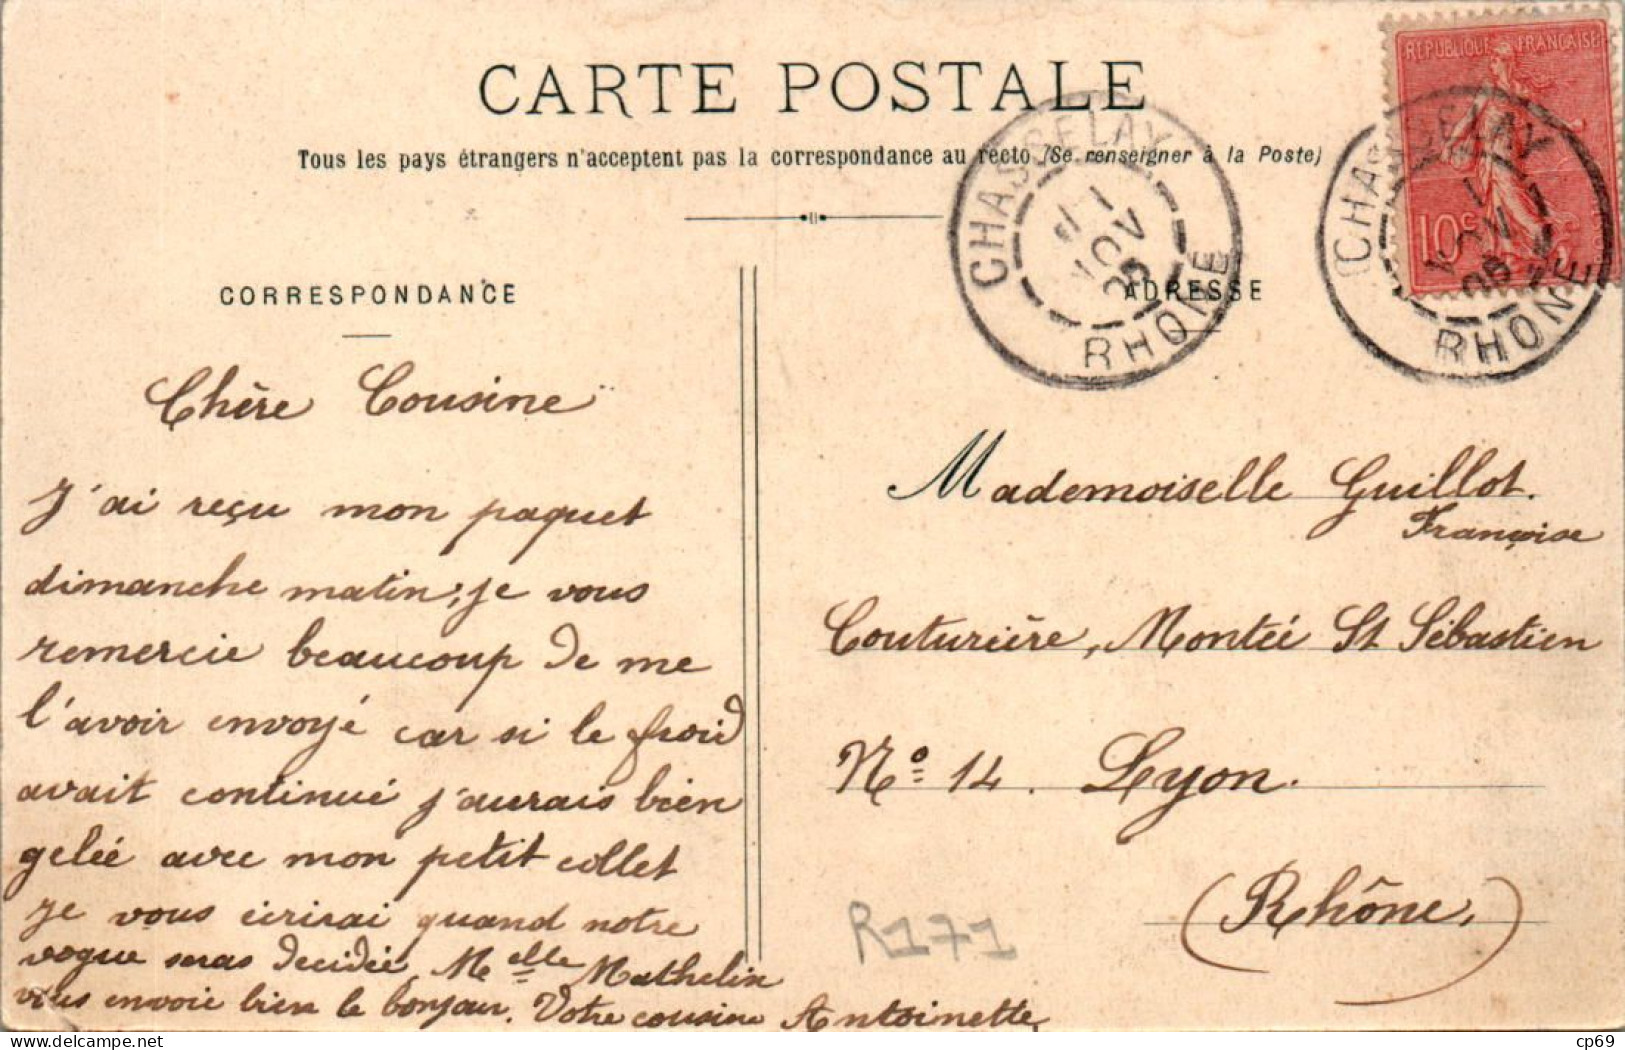 Chasselay Canton De Limonest Place De La Mairie Rhône Cpa Voyagée En 1905 En B.Etat - Autres & Non Classés